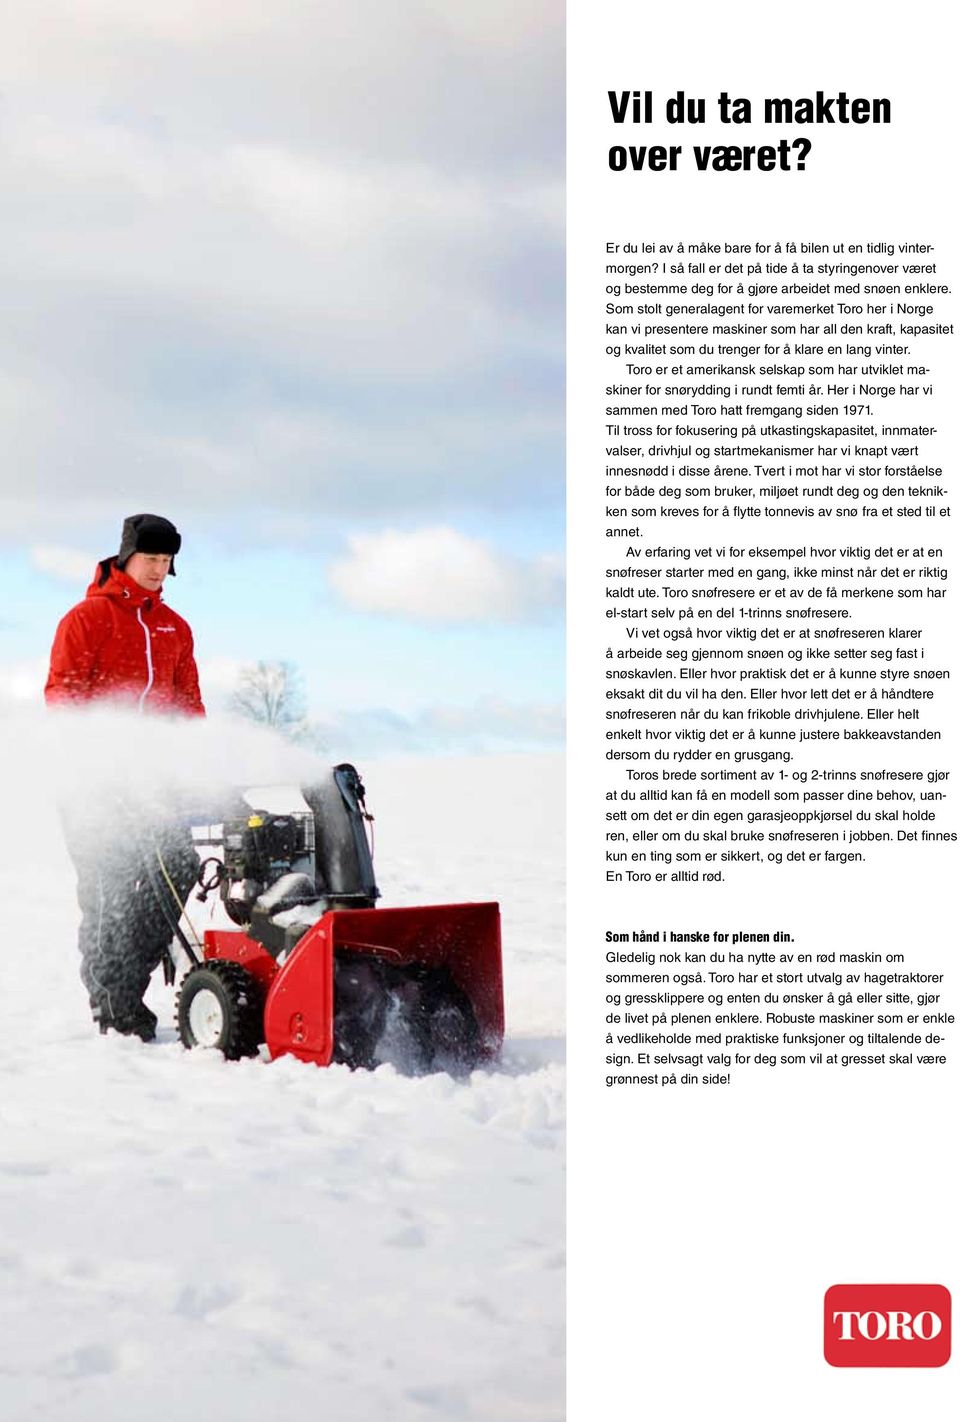 Som stolt generalagent for varemerket Toro her i Norge kan vi presentere maskiner som har all den kraft, kapasitet og kvalitet som du trenger for å klare en lang vinter.